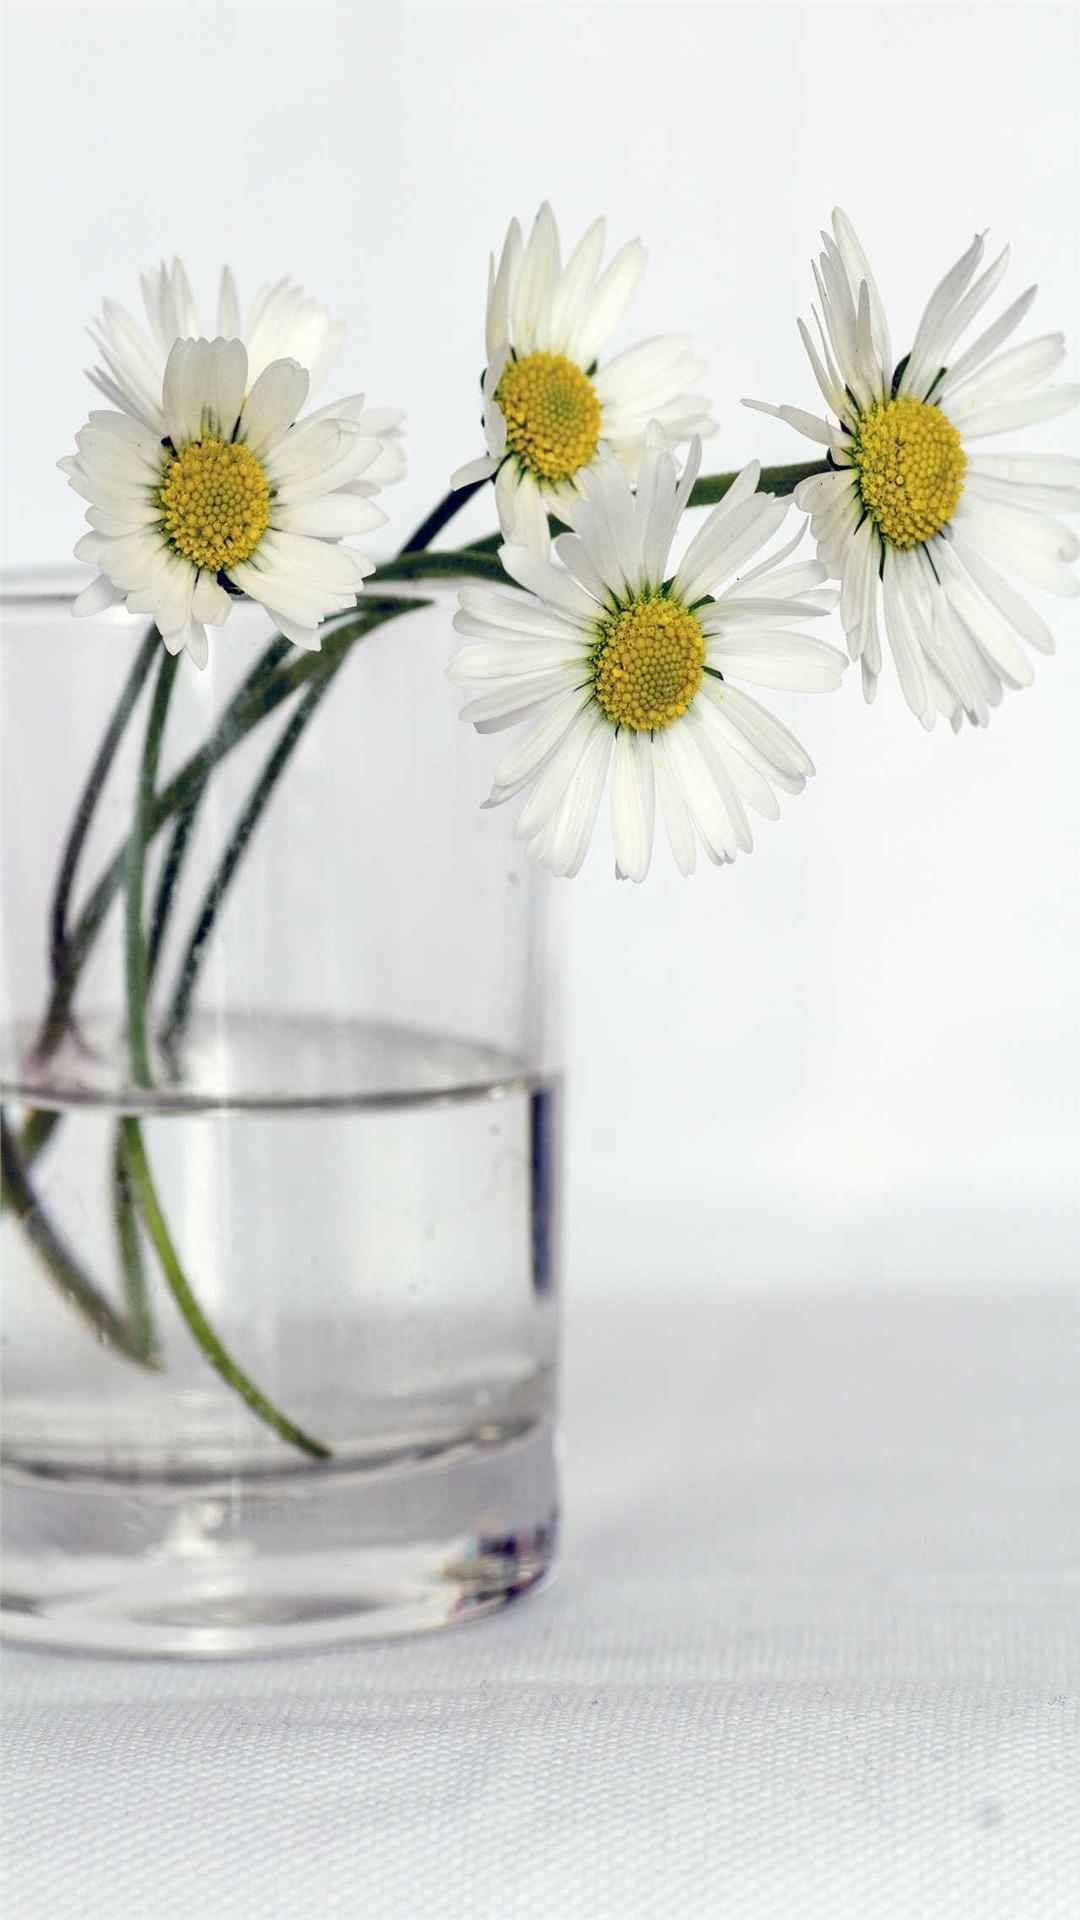 Daisy Flower iPhone Wallpaper